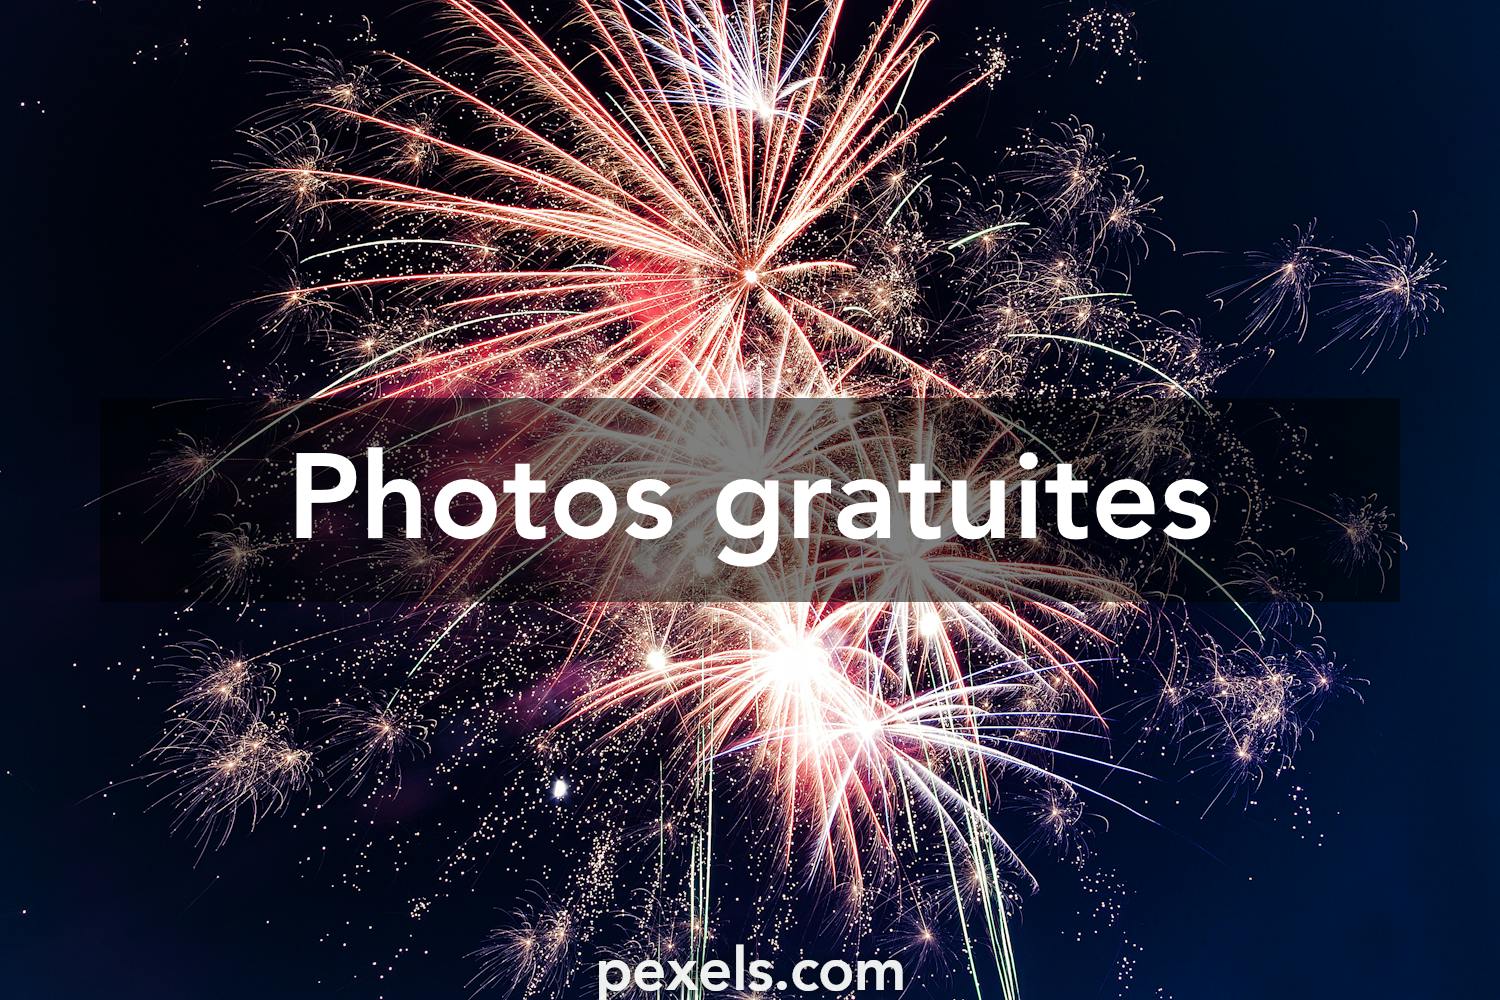 Les 7 000 Meilleures Photos De Feu D Artifice Telechargement Gratuit Photos Pexels